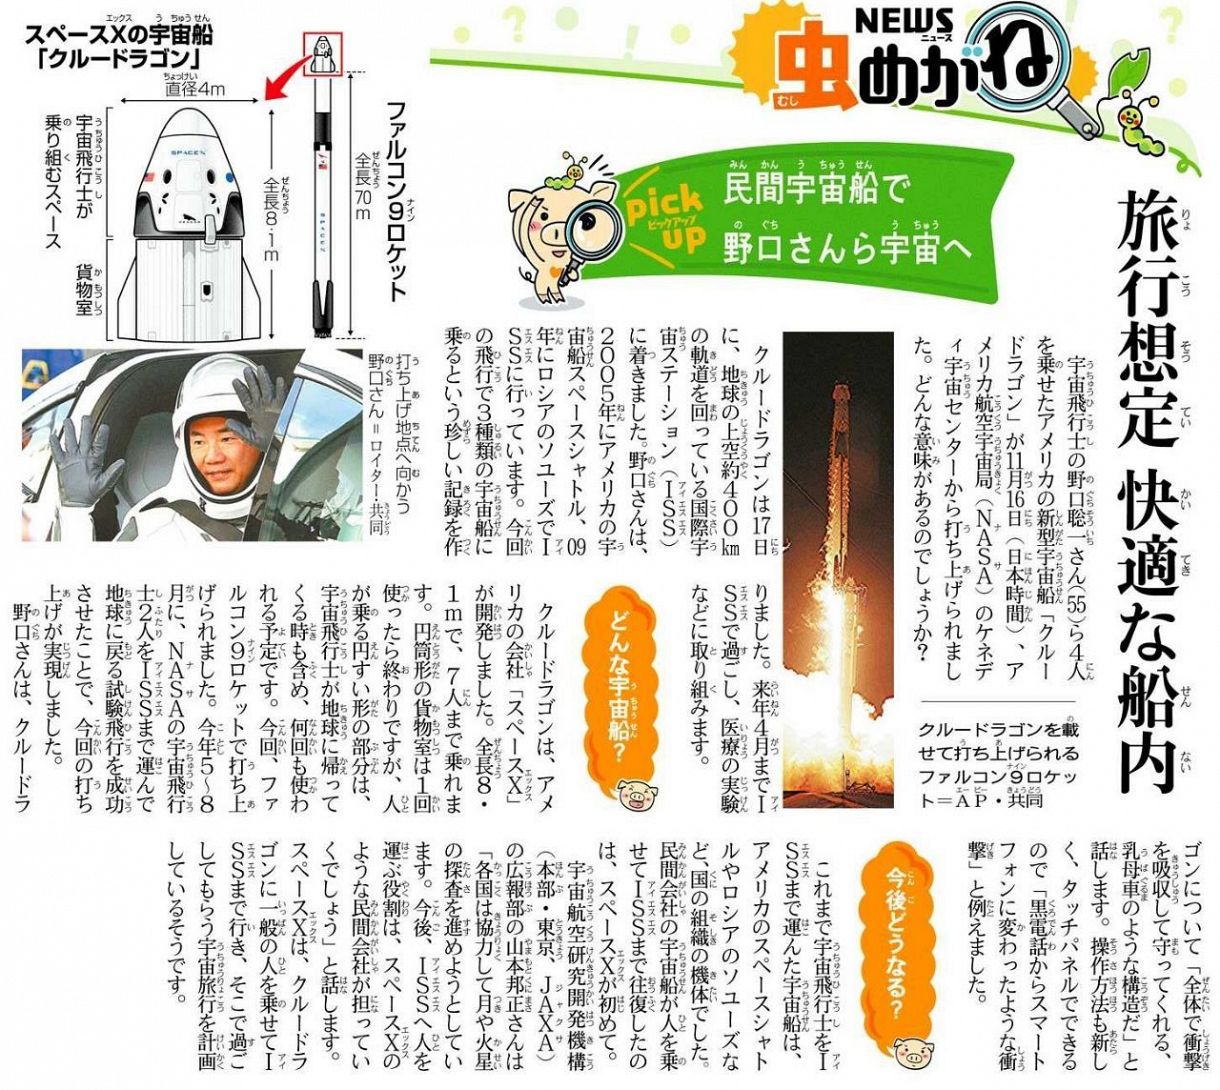 野口聡一 のぐちそういち さん 乗 の ったのはどんな宇宙船 うちゅうせん 中日新聞web